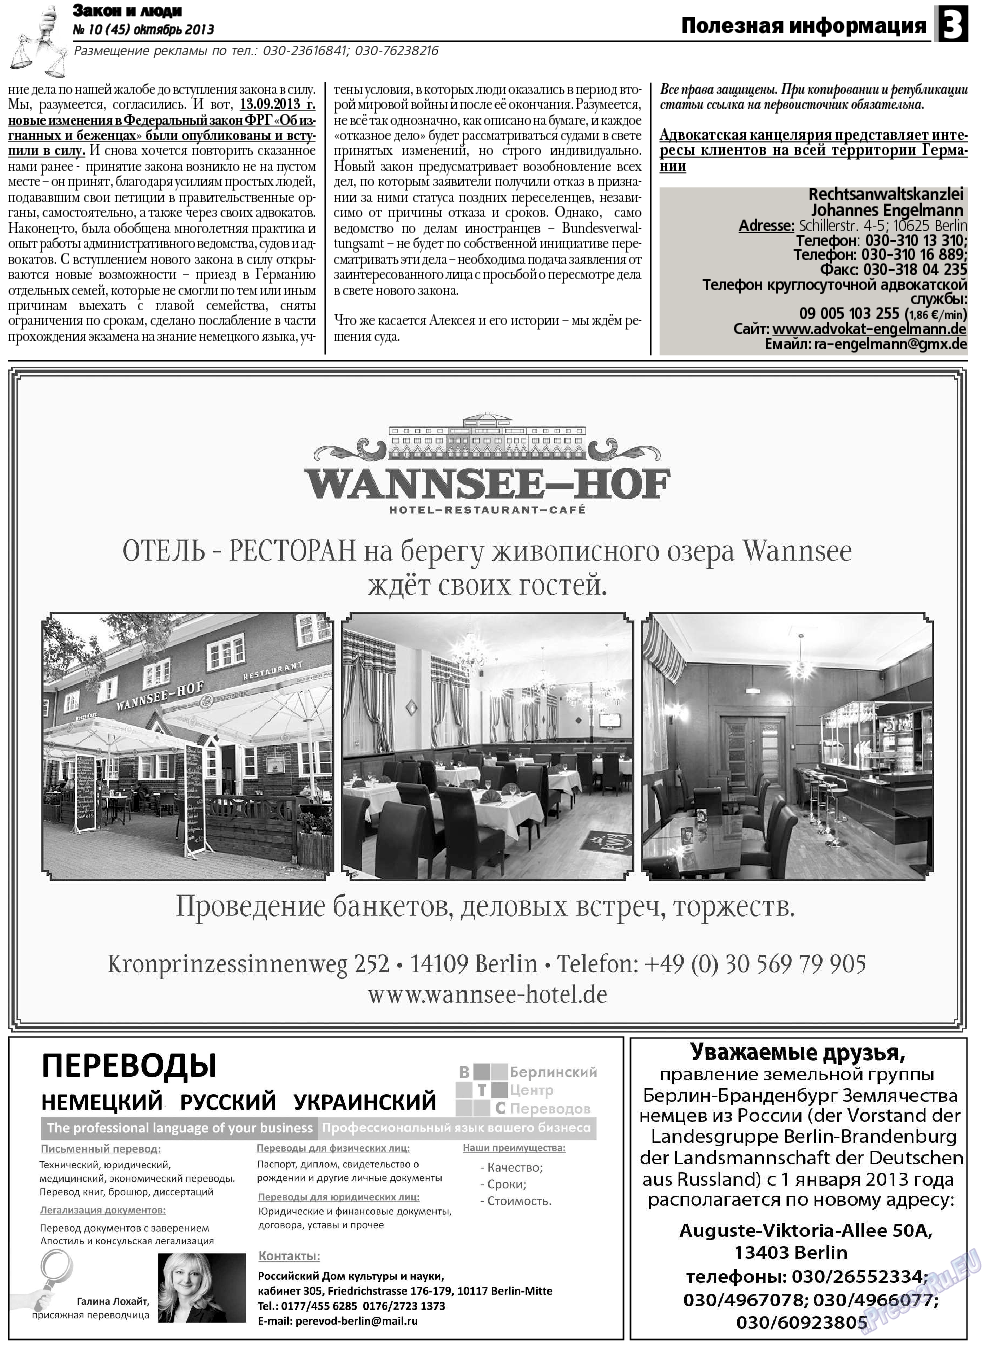 Закон и люди, газета. 2013 №10 стр.3